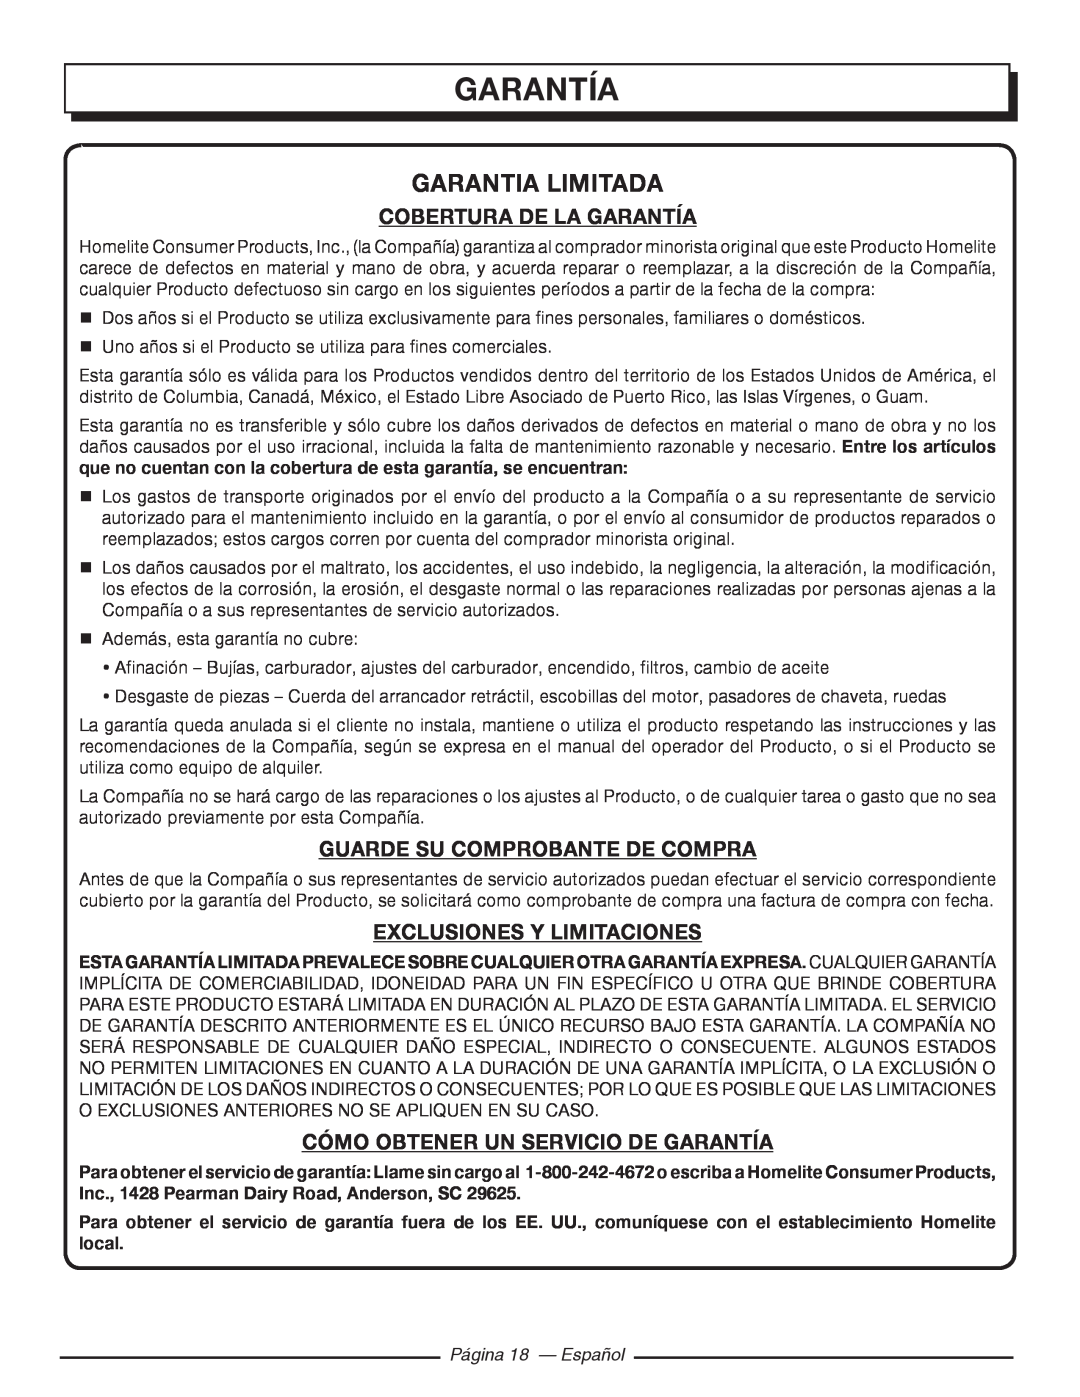 Homelite HGCA5000 Garantia Limitada, Cobertura De La Garantía, Guarde Su Comprobante De Compra, Página 18 - Español 